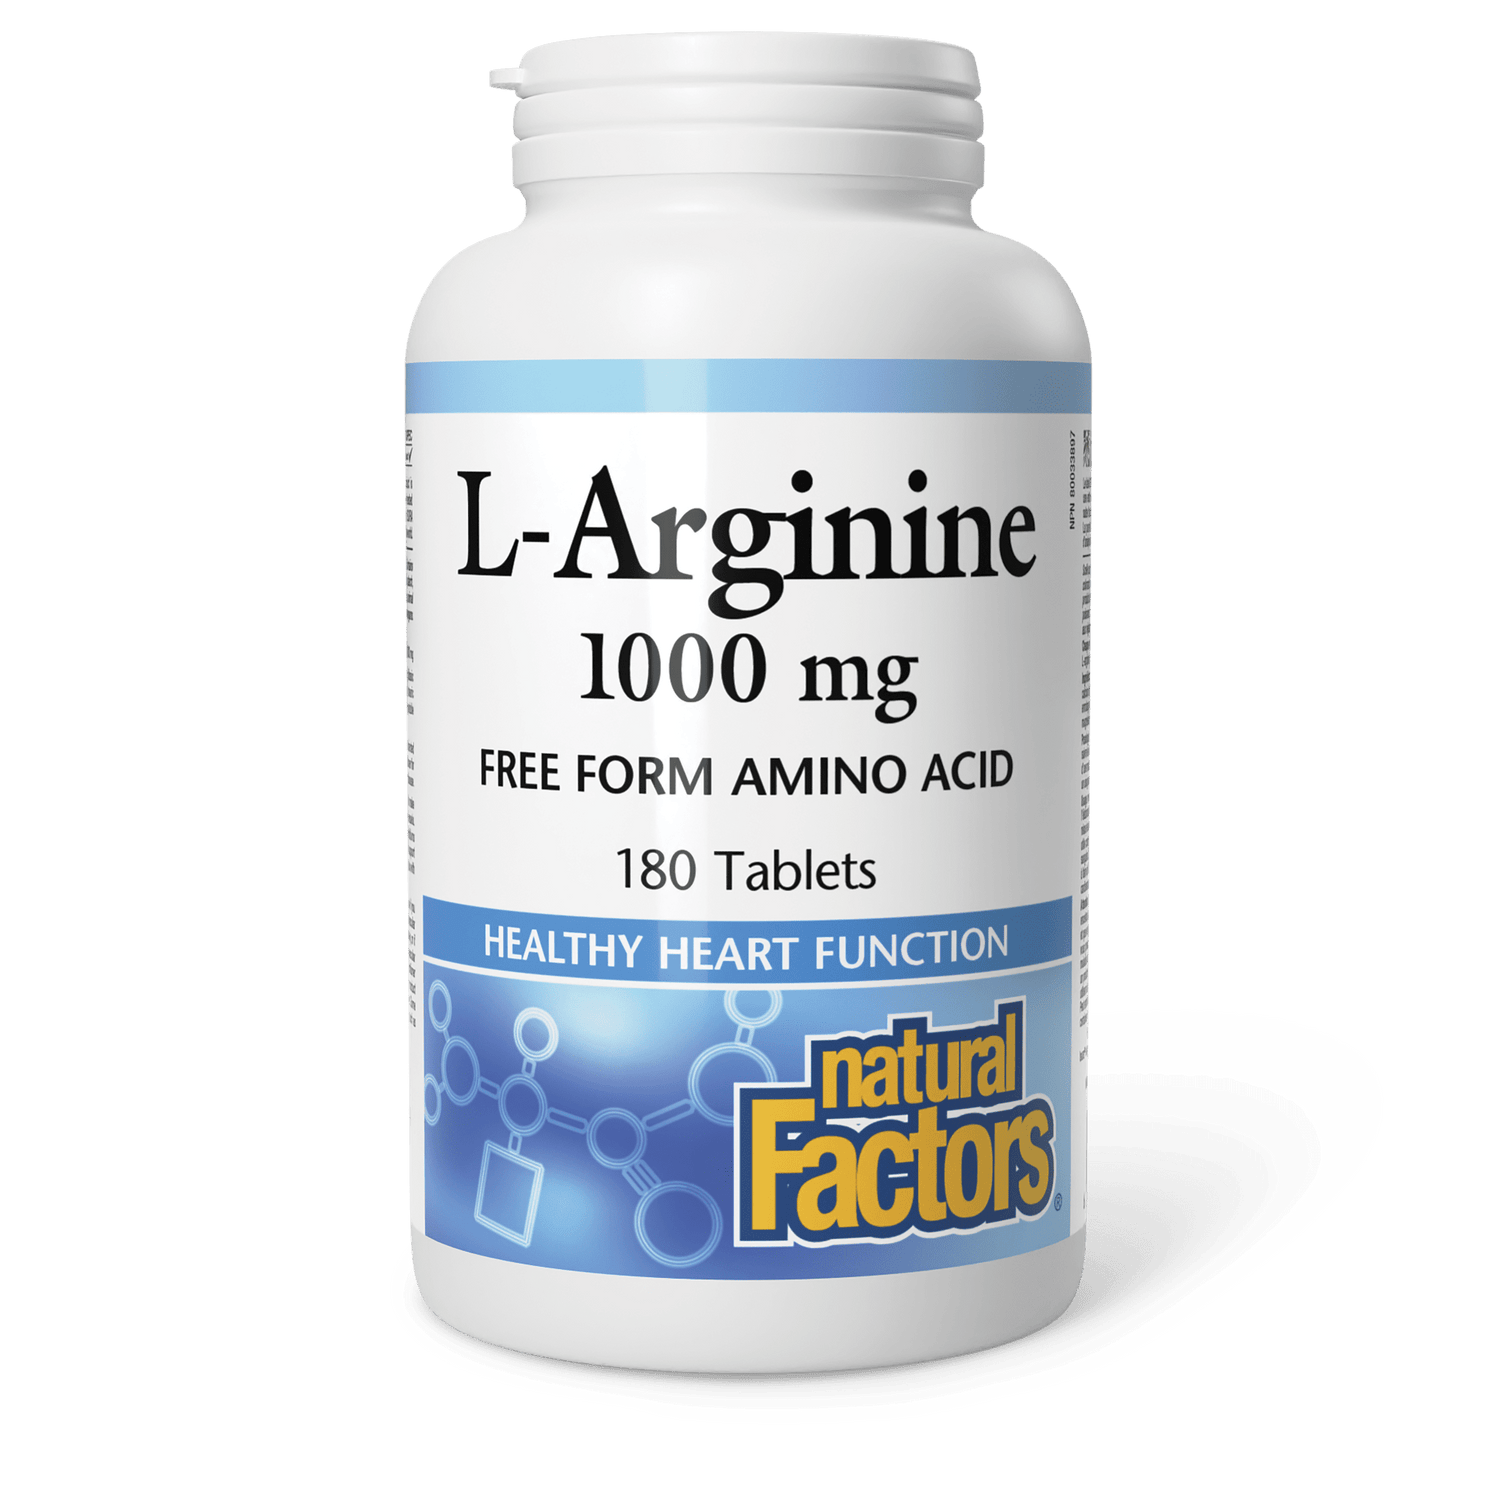 L-Arginine 1000 mg, Natural Factors|v|image|2856